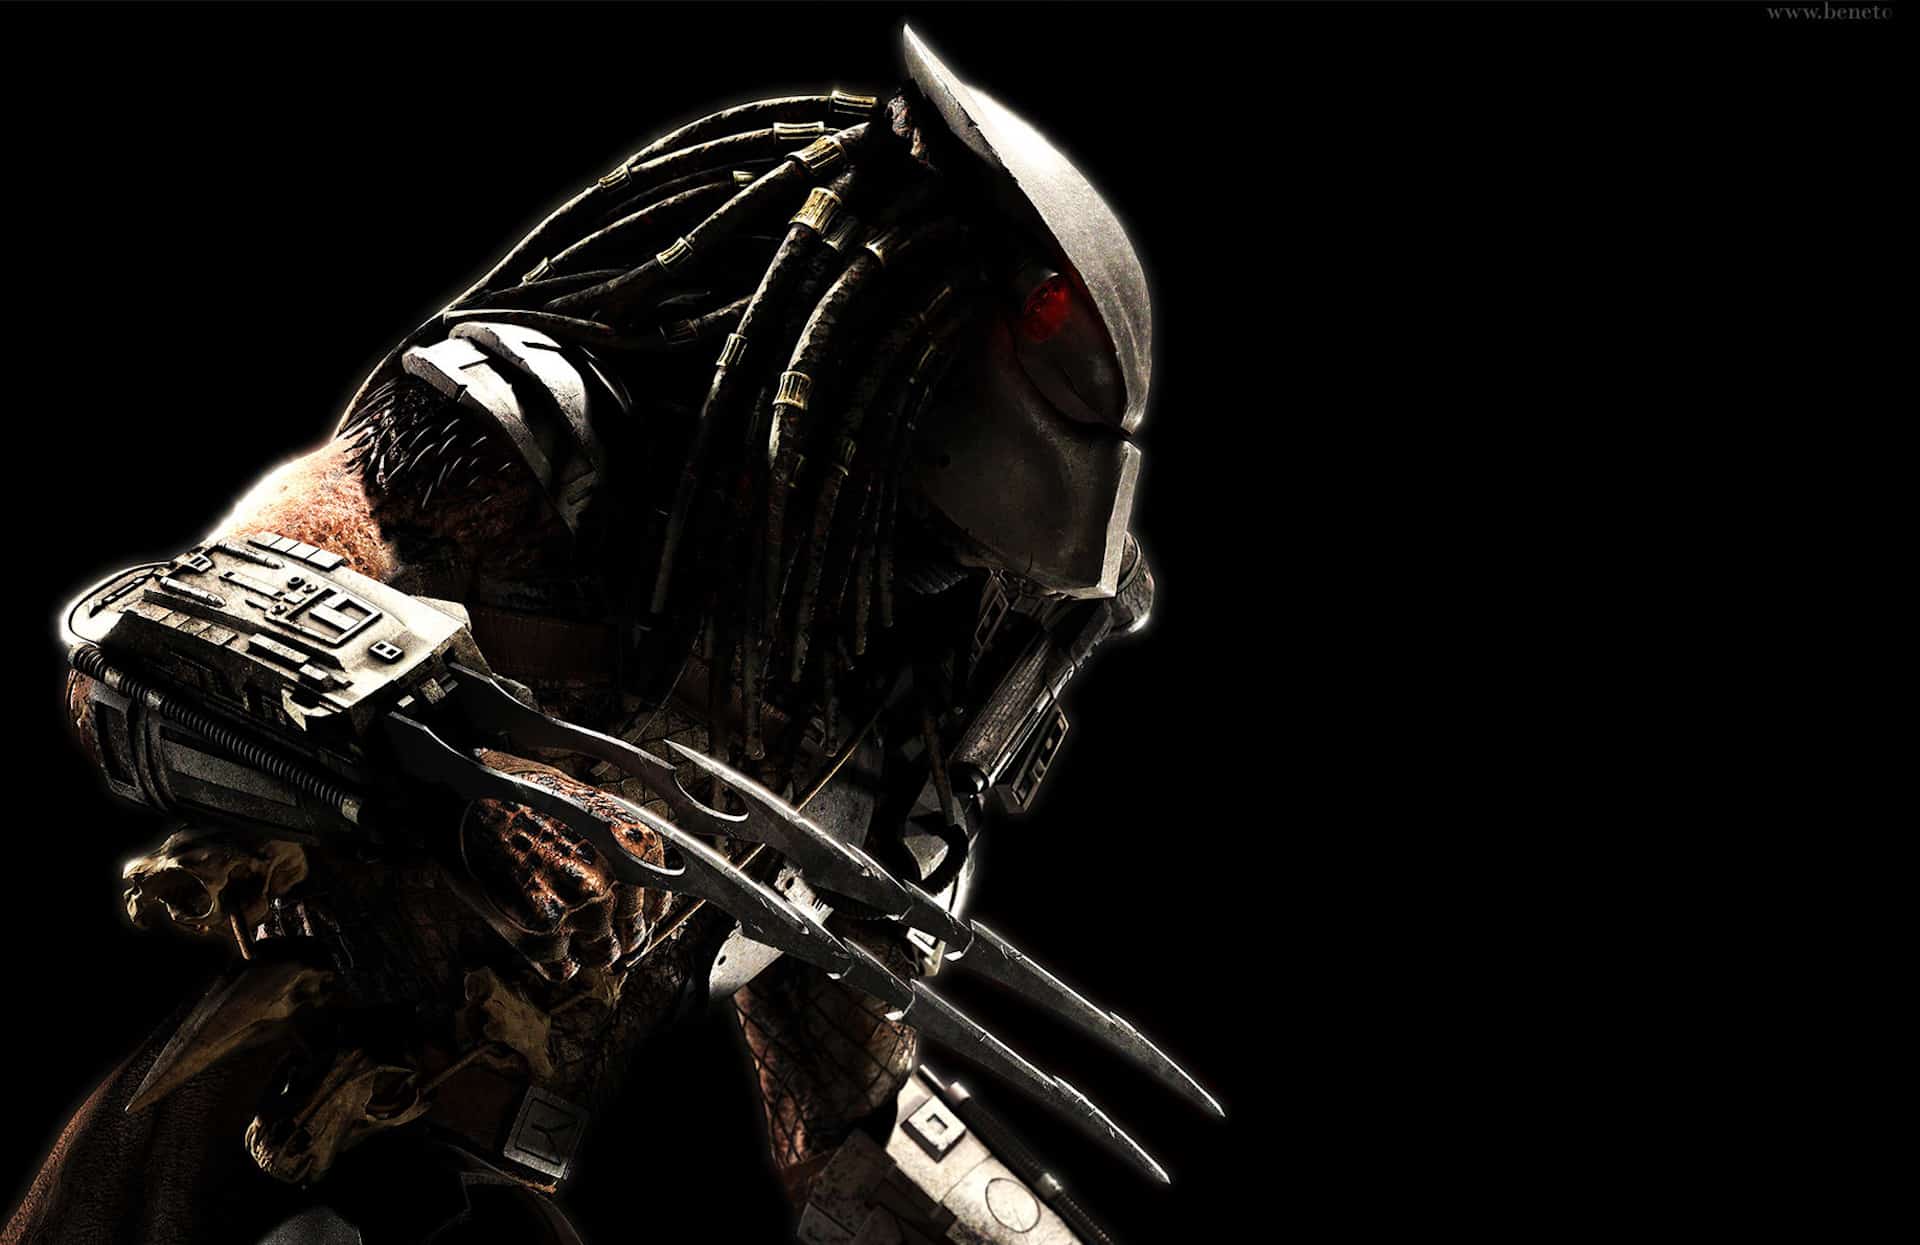 The Predator: i reshoot mostrano maggiori collegamenti ai film precedenti